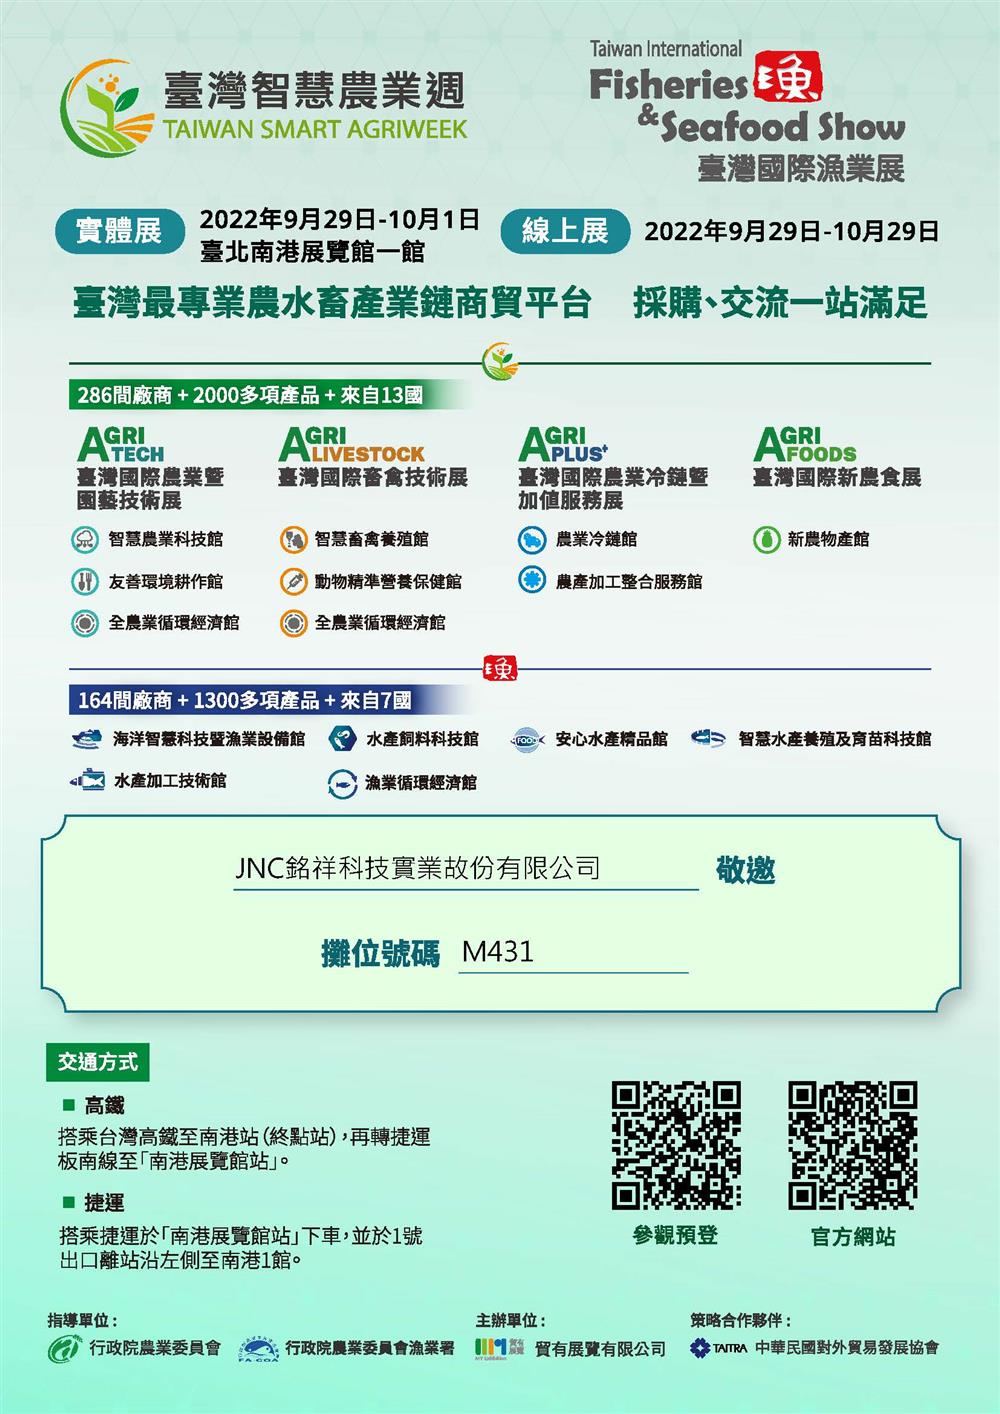 銘祥科技,2022台灣國際漁業展